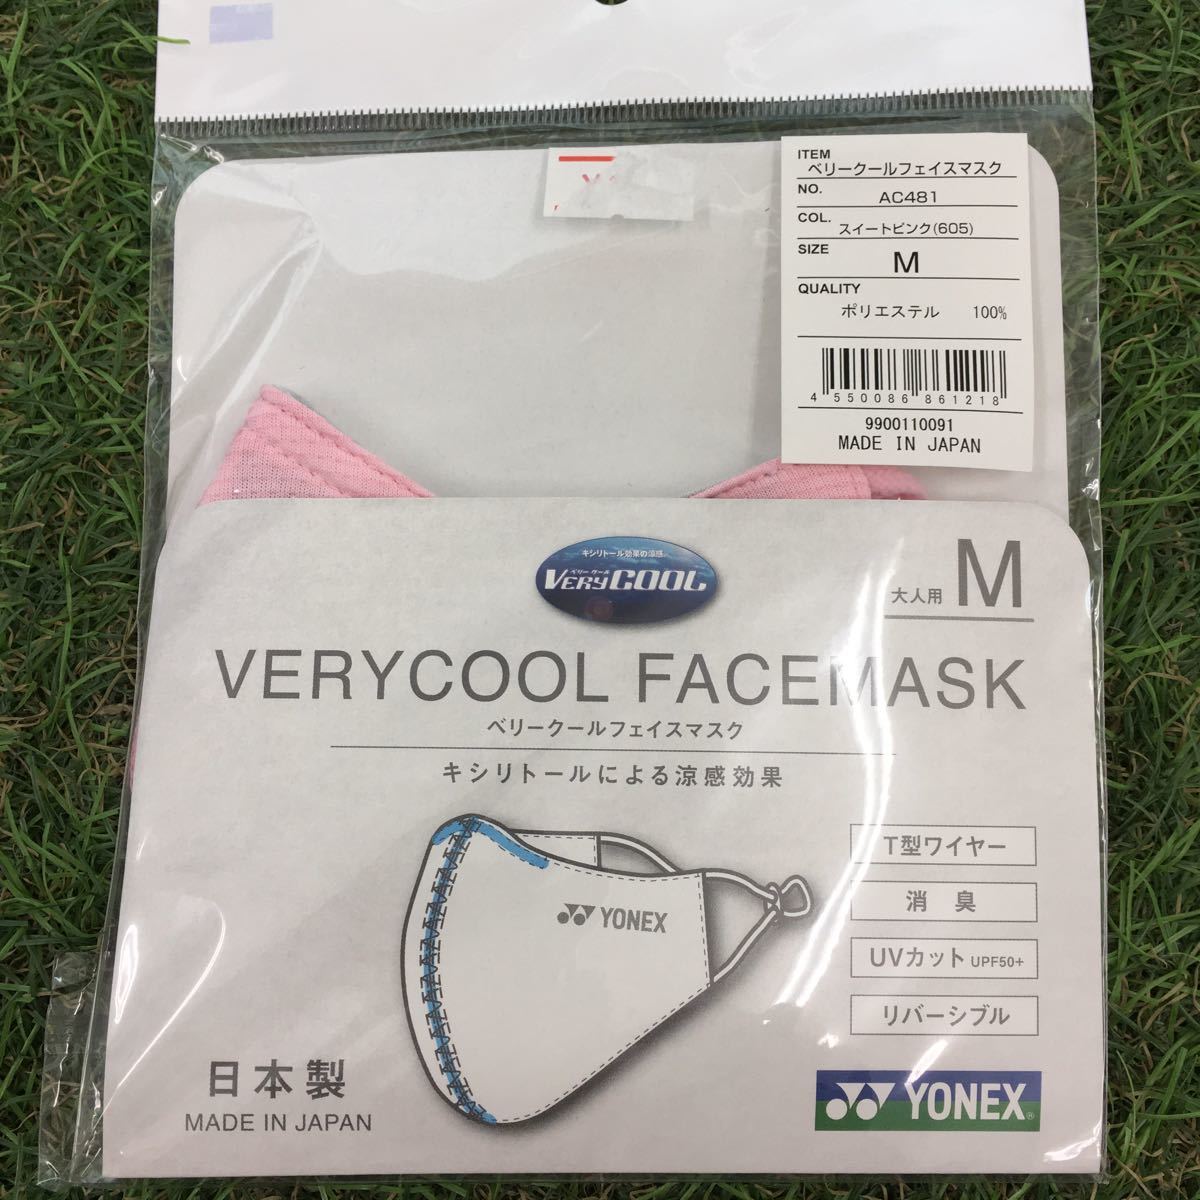 IM052-E19 YONEX Yonex be утечка -ru маска для лица AC481. чувство эффект дезодорация UV cut размер M 3 пункт суммировать не использовался выставленный товар маска 